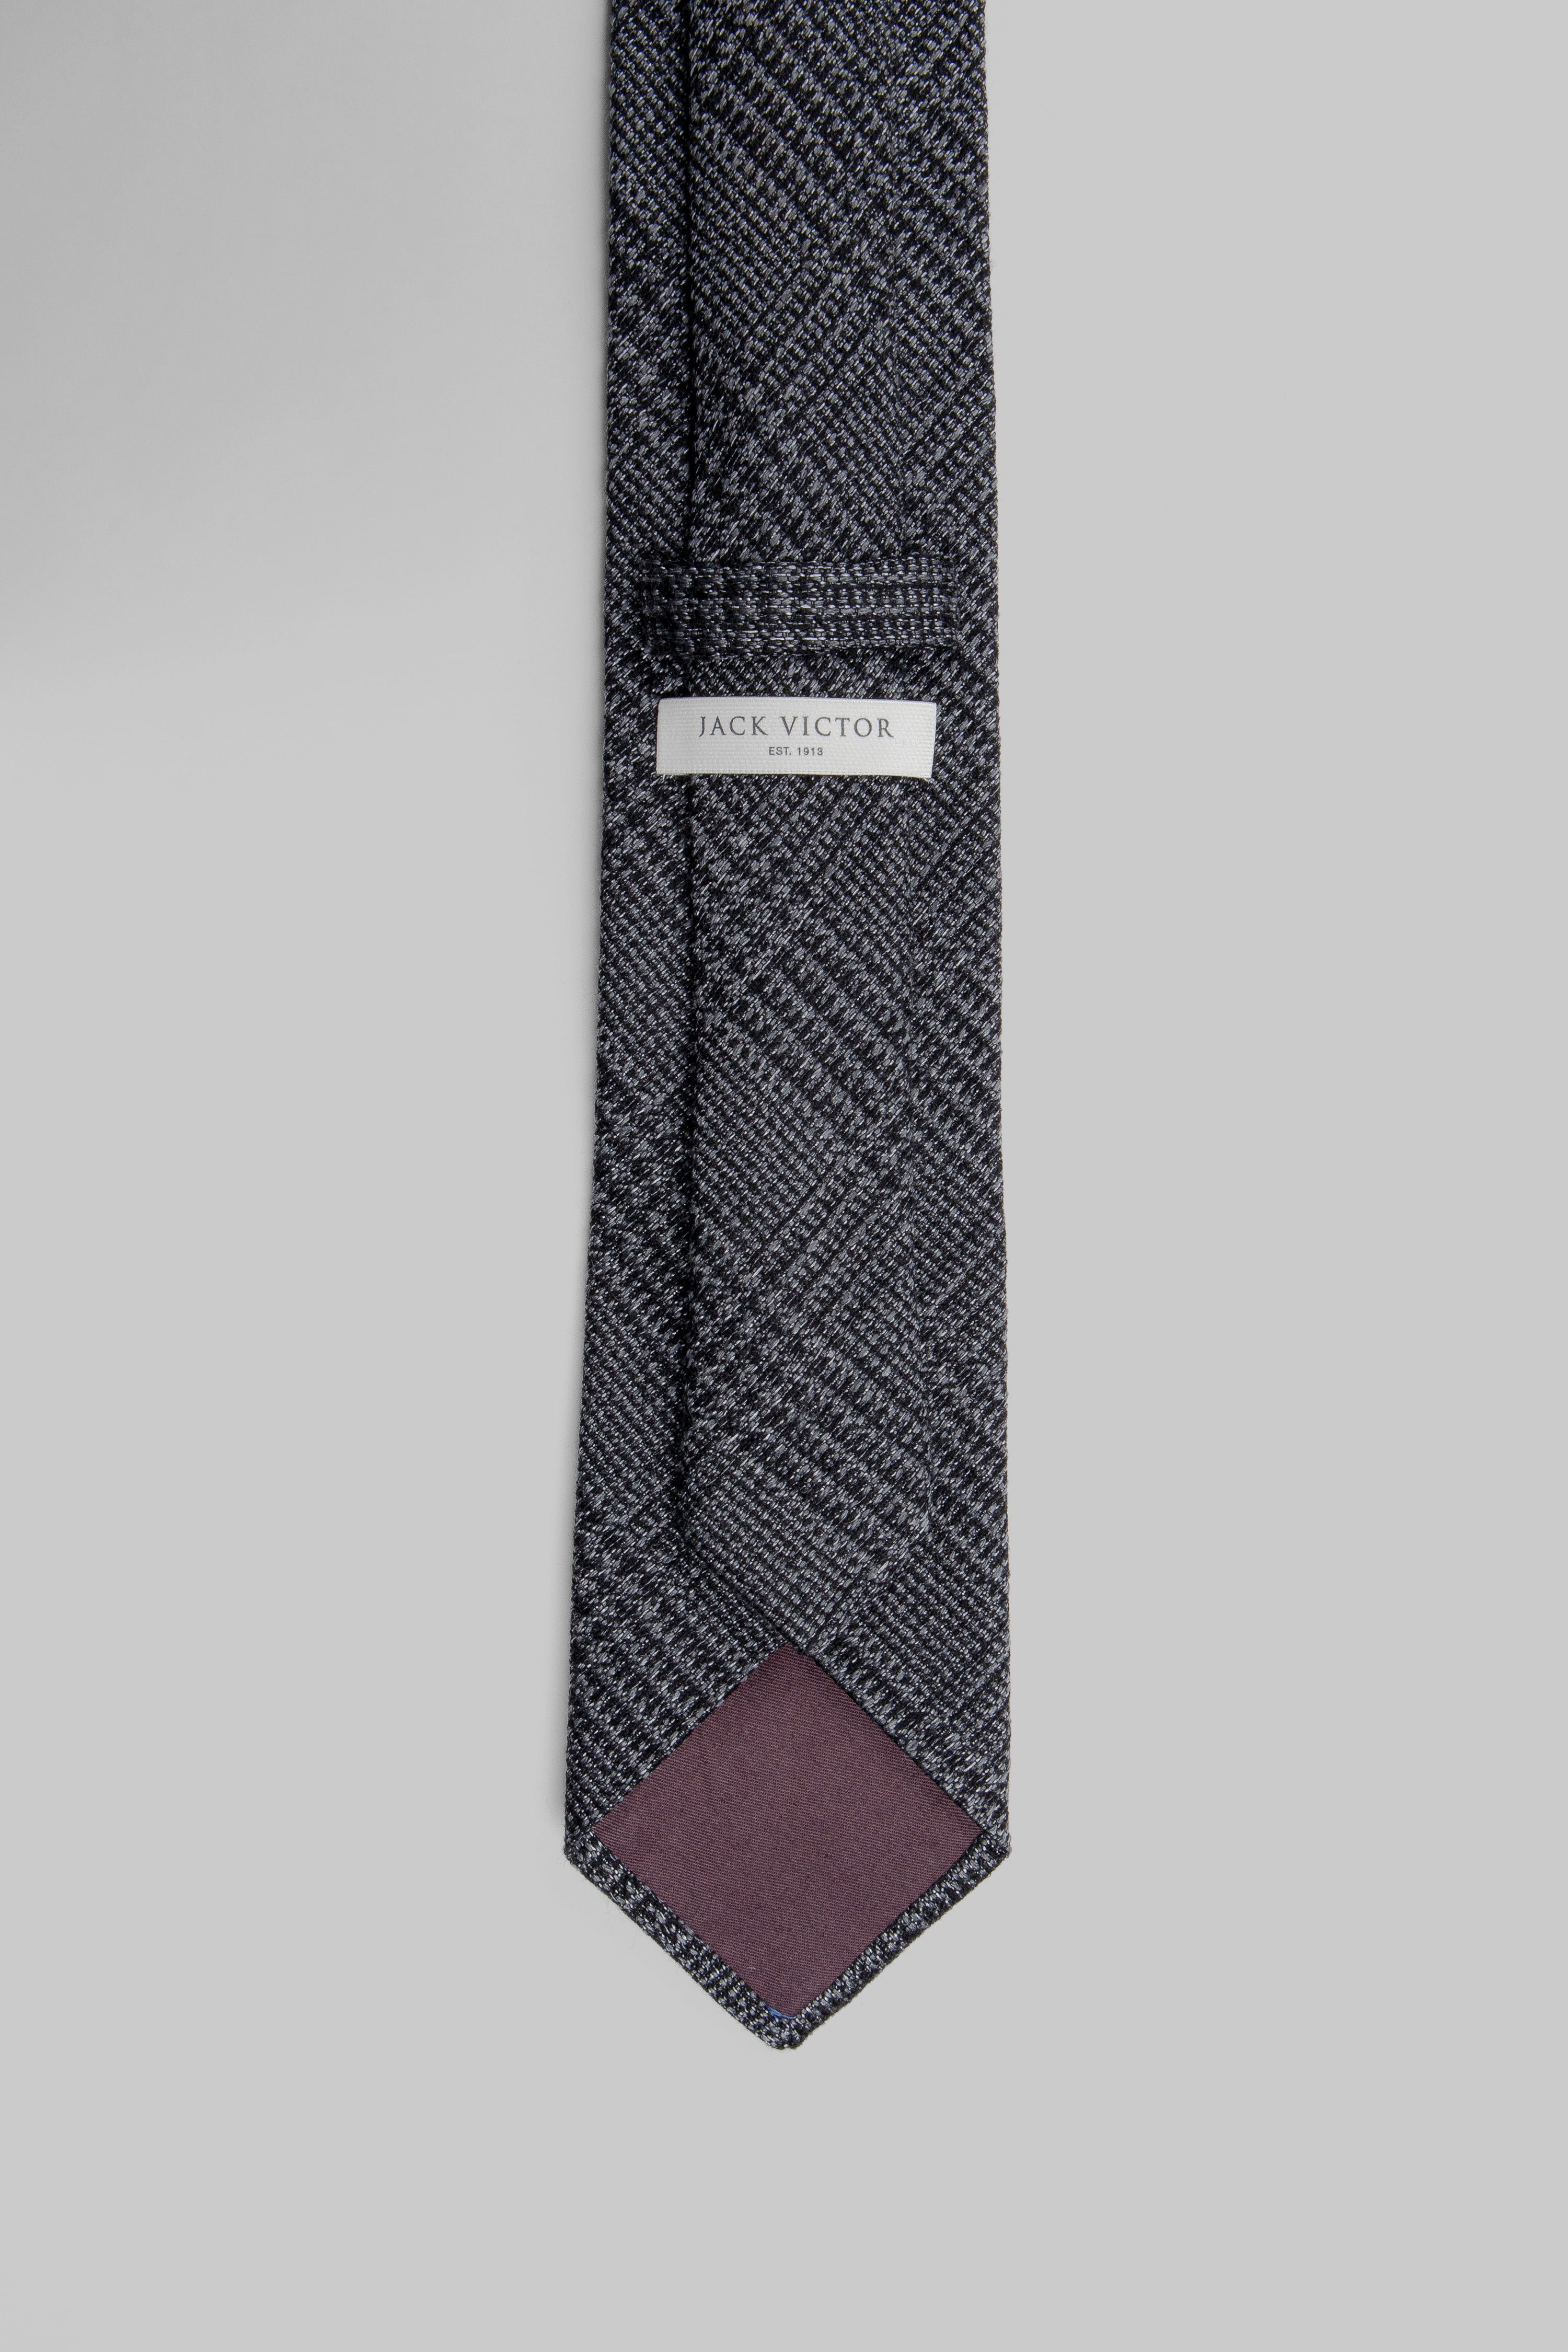 Vue alternative 3 Cravate Tissée Prince de Galles Anthracite